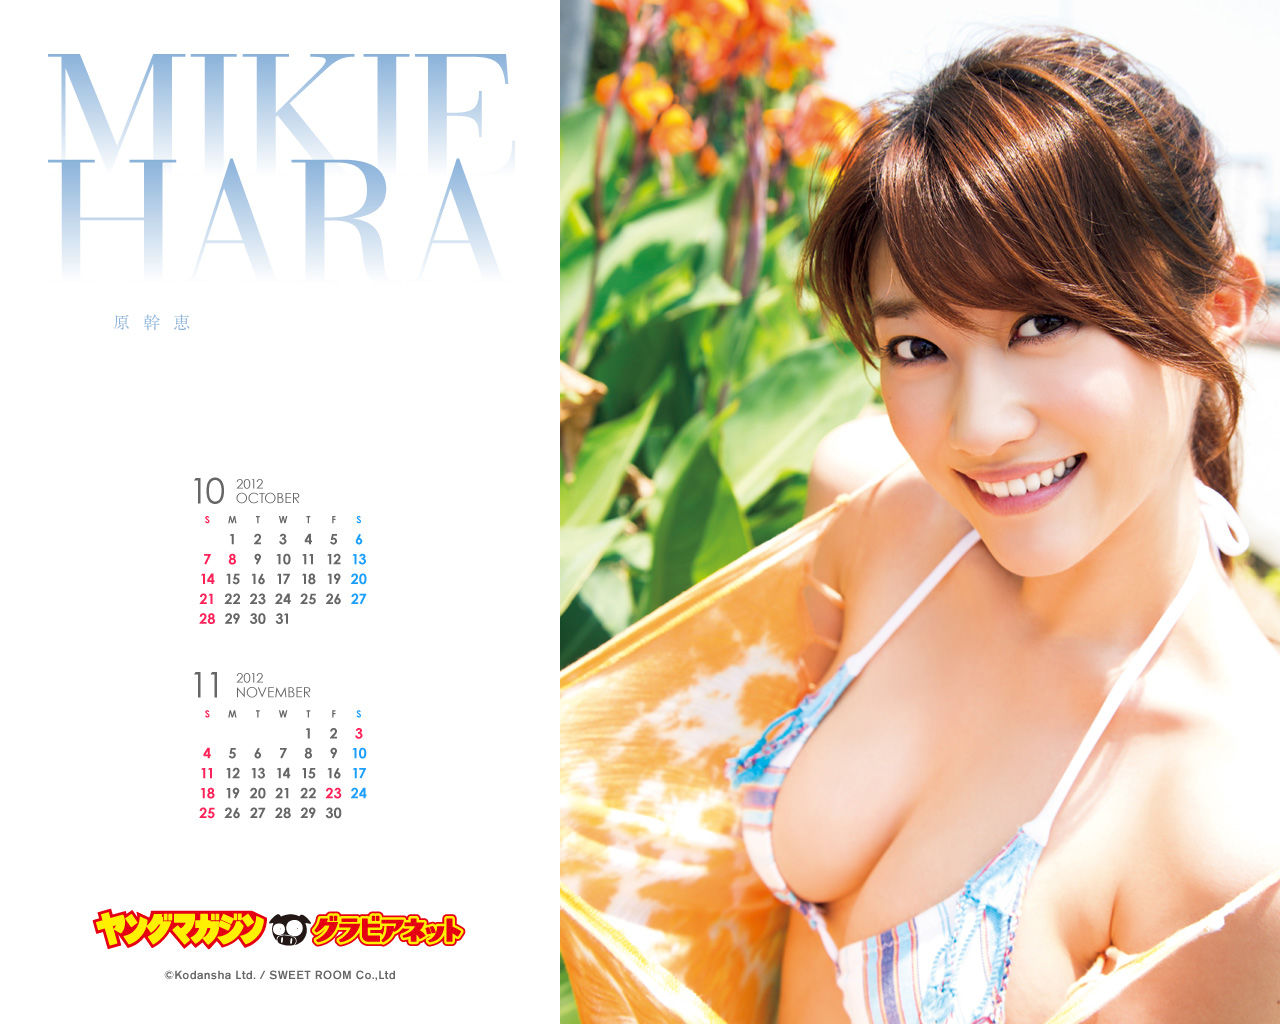 [Young Magazine] Photo Magazine Ayaka Sayama, Yoshiki Rika Hara Mikie 2012 No.44 Page 43 No.4e9c7f